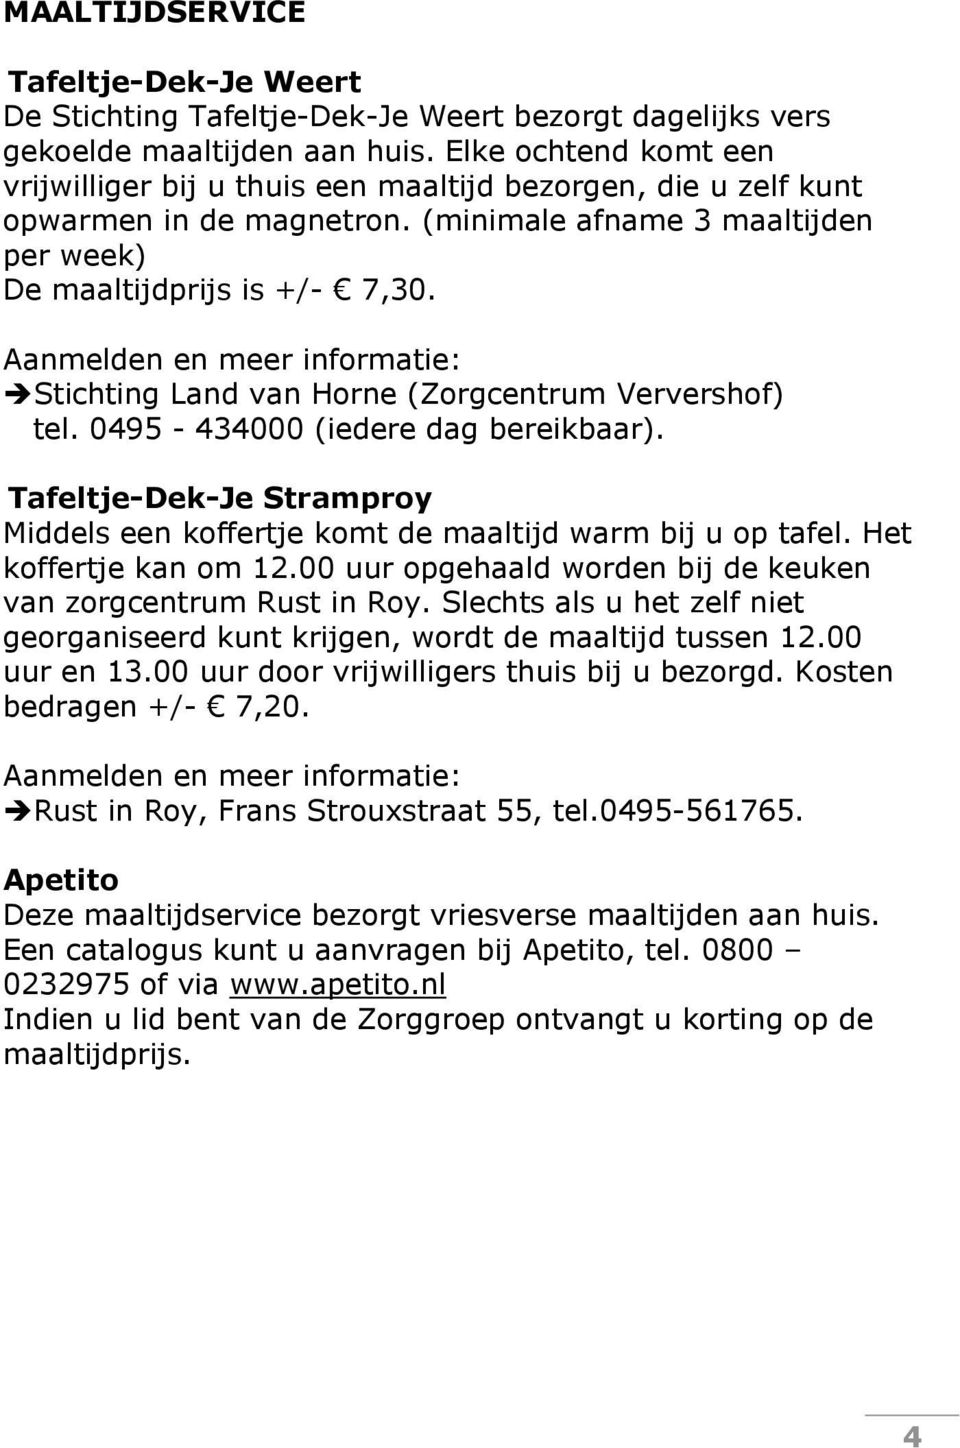 Aanmelden en meer informatie: Stichting Land van Horne (Zorgcentrum Ververshof) tel. 0495-434000 (iedere dag bereikbaar).